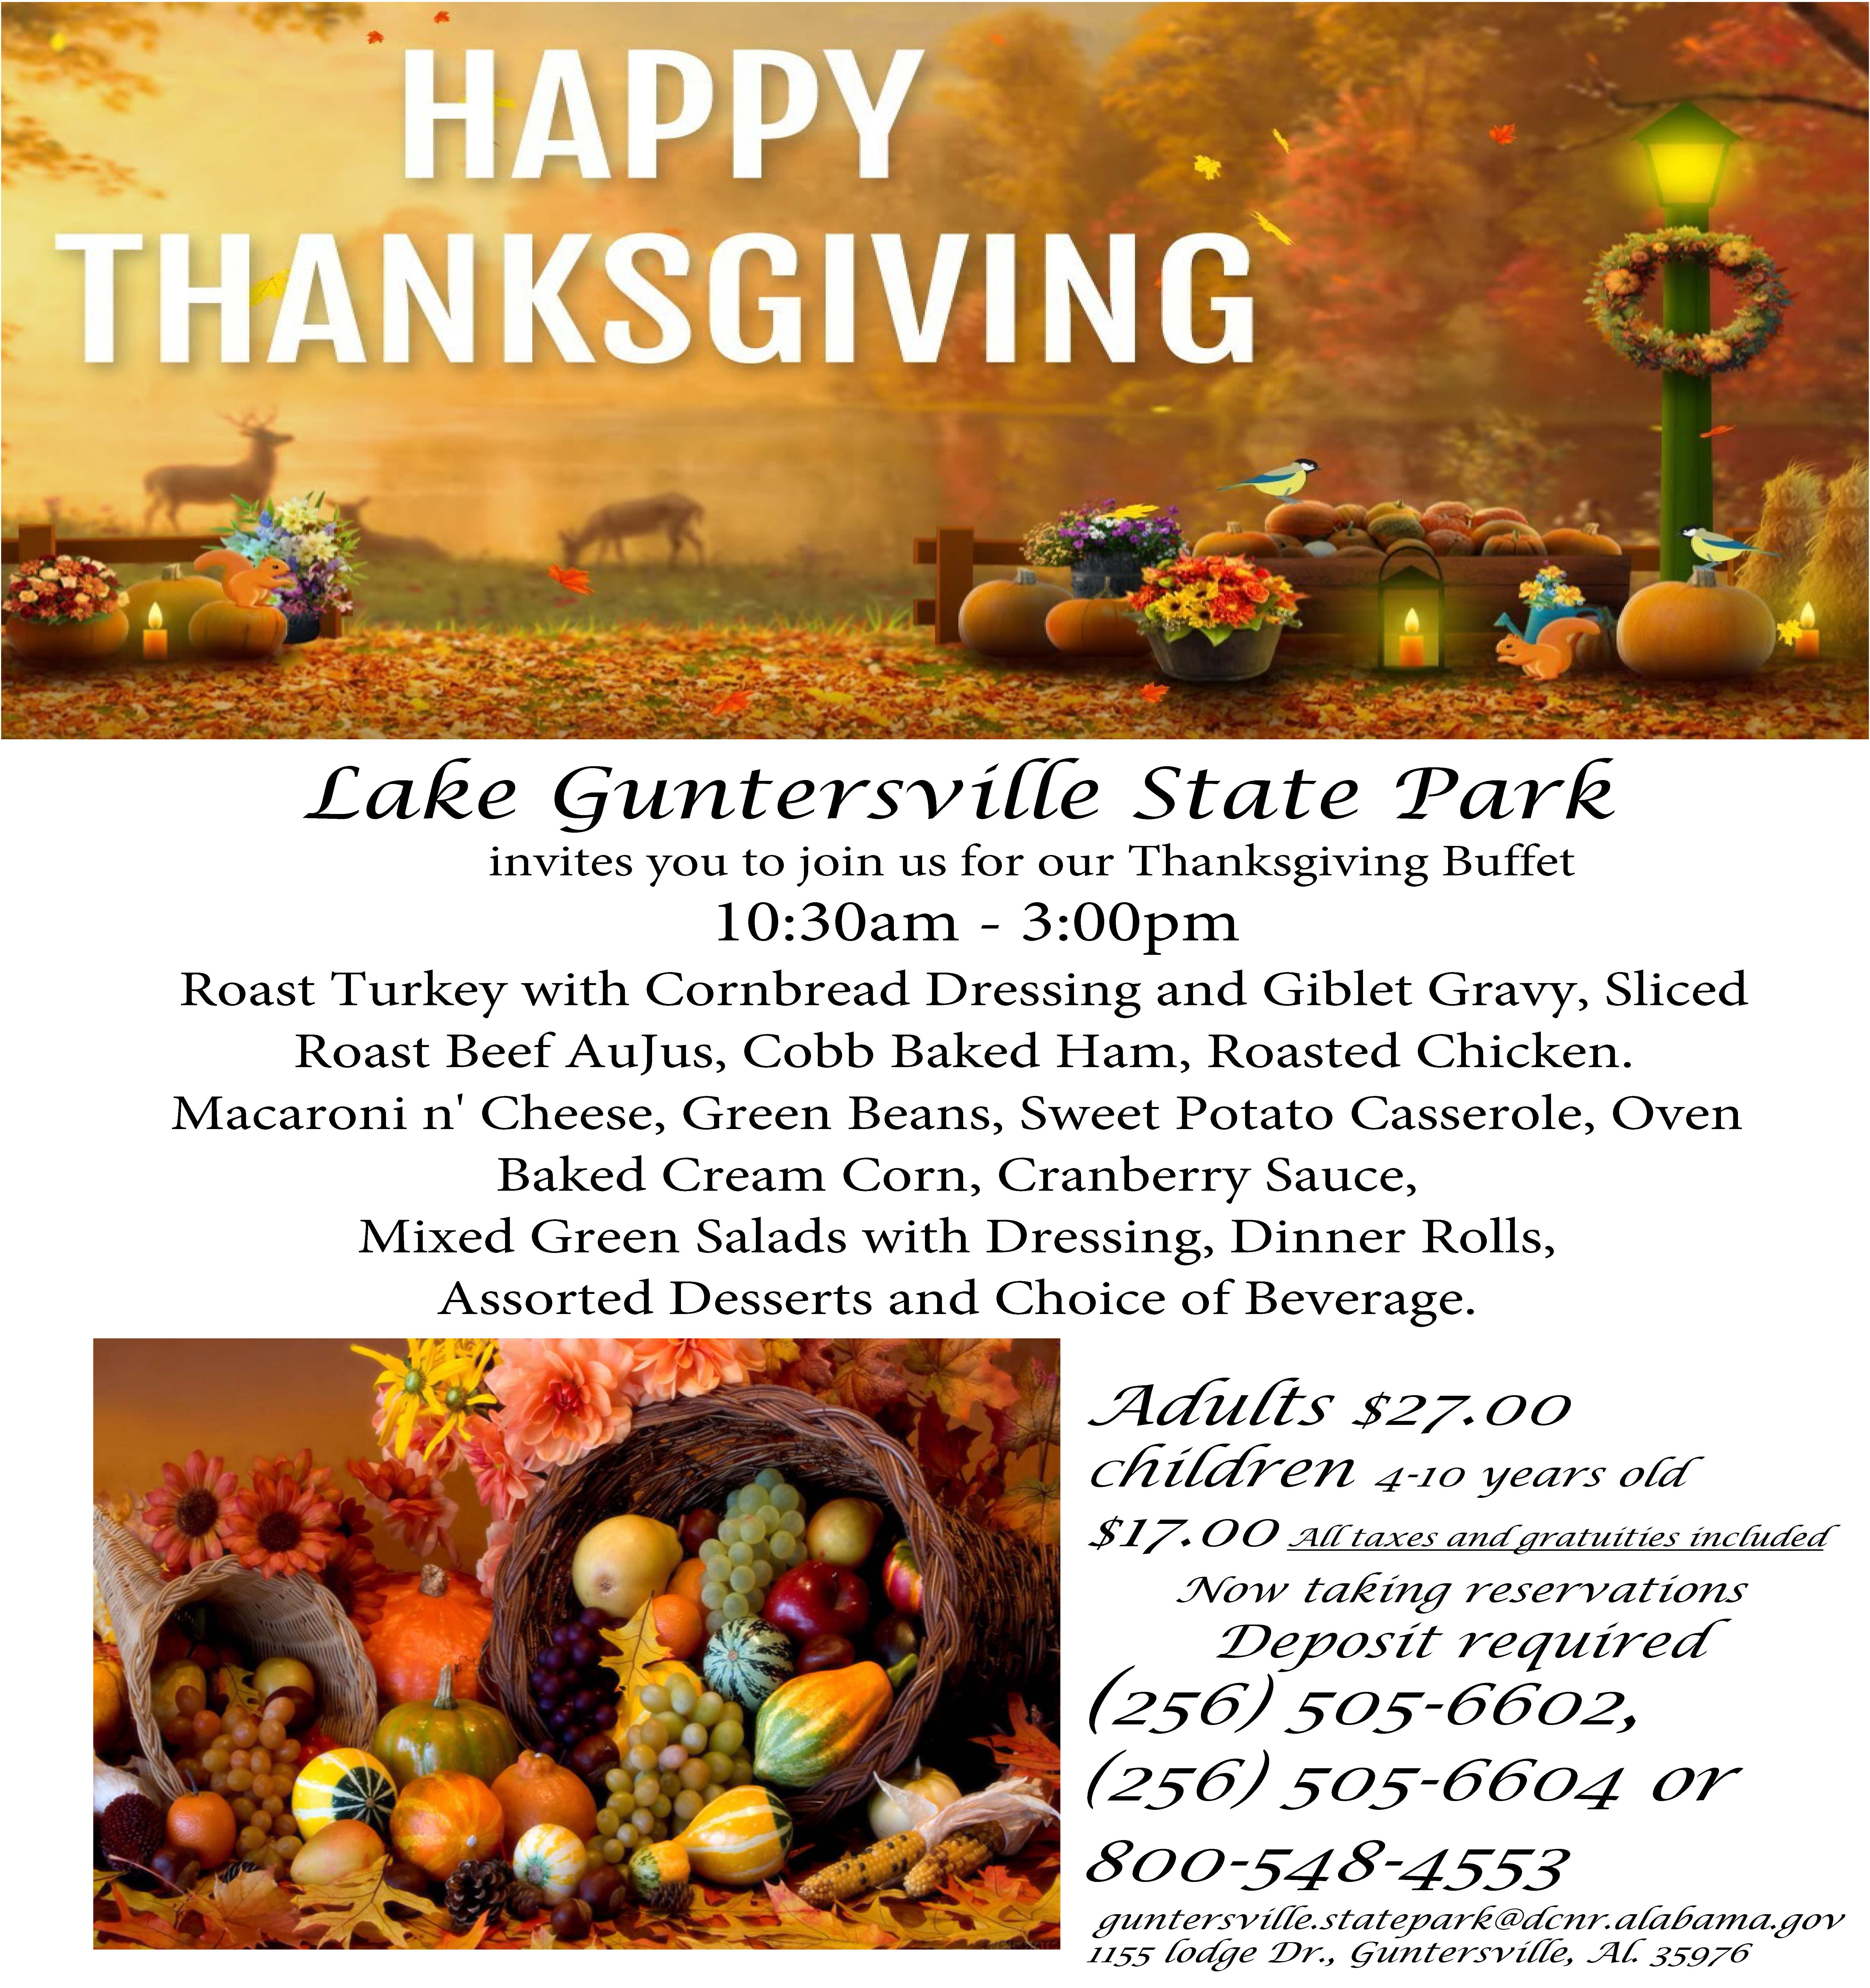 LGSP Thanksgiving Buffet